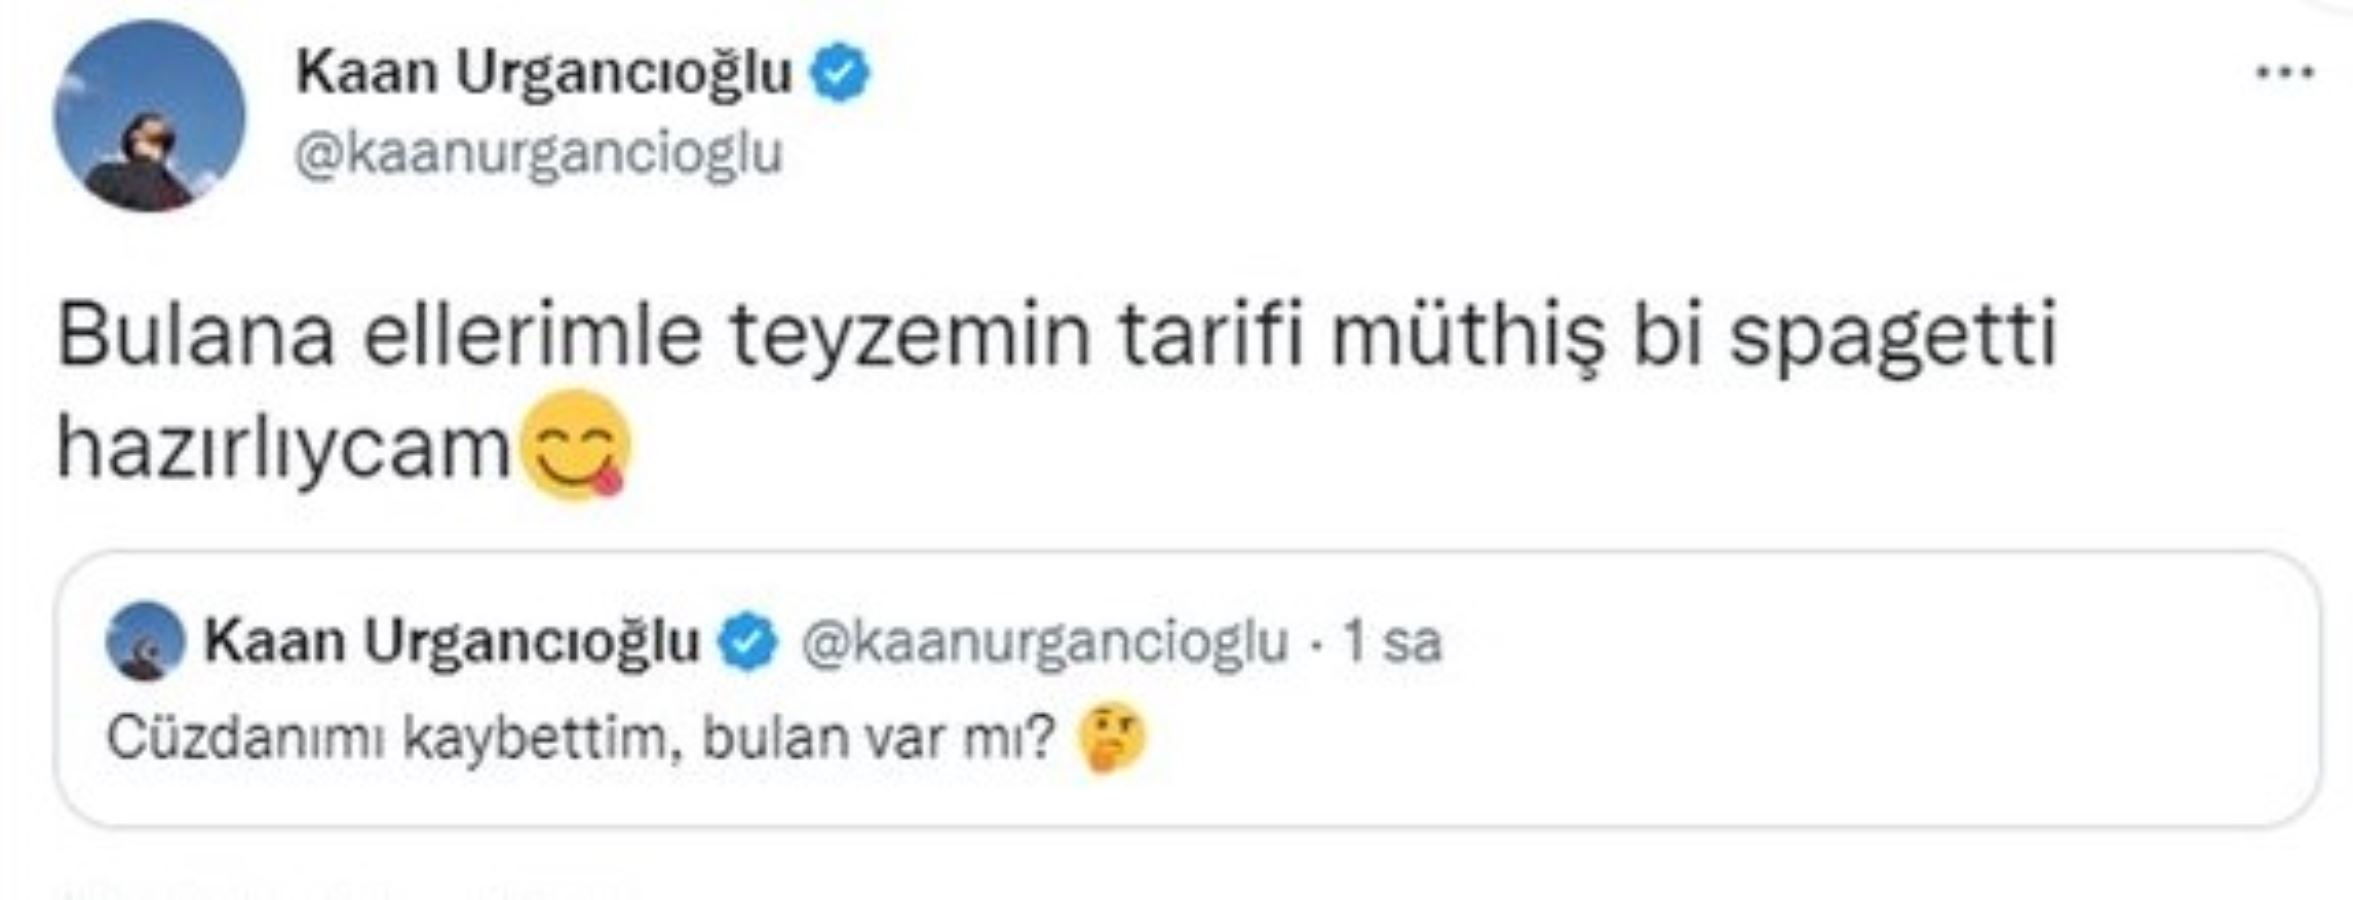 Kaan Urgancıoğlu cüzdanını kaybetti, Twitter'dan yardım istedi